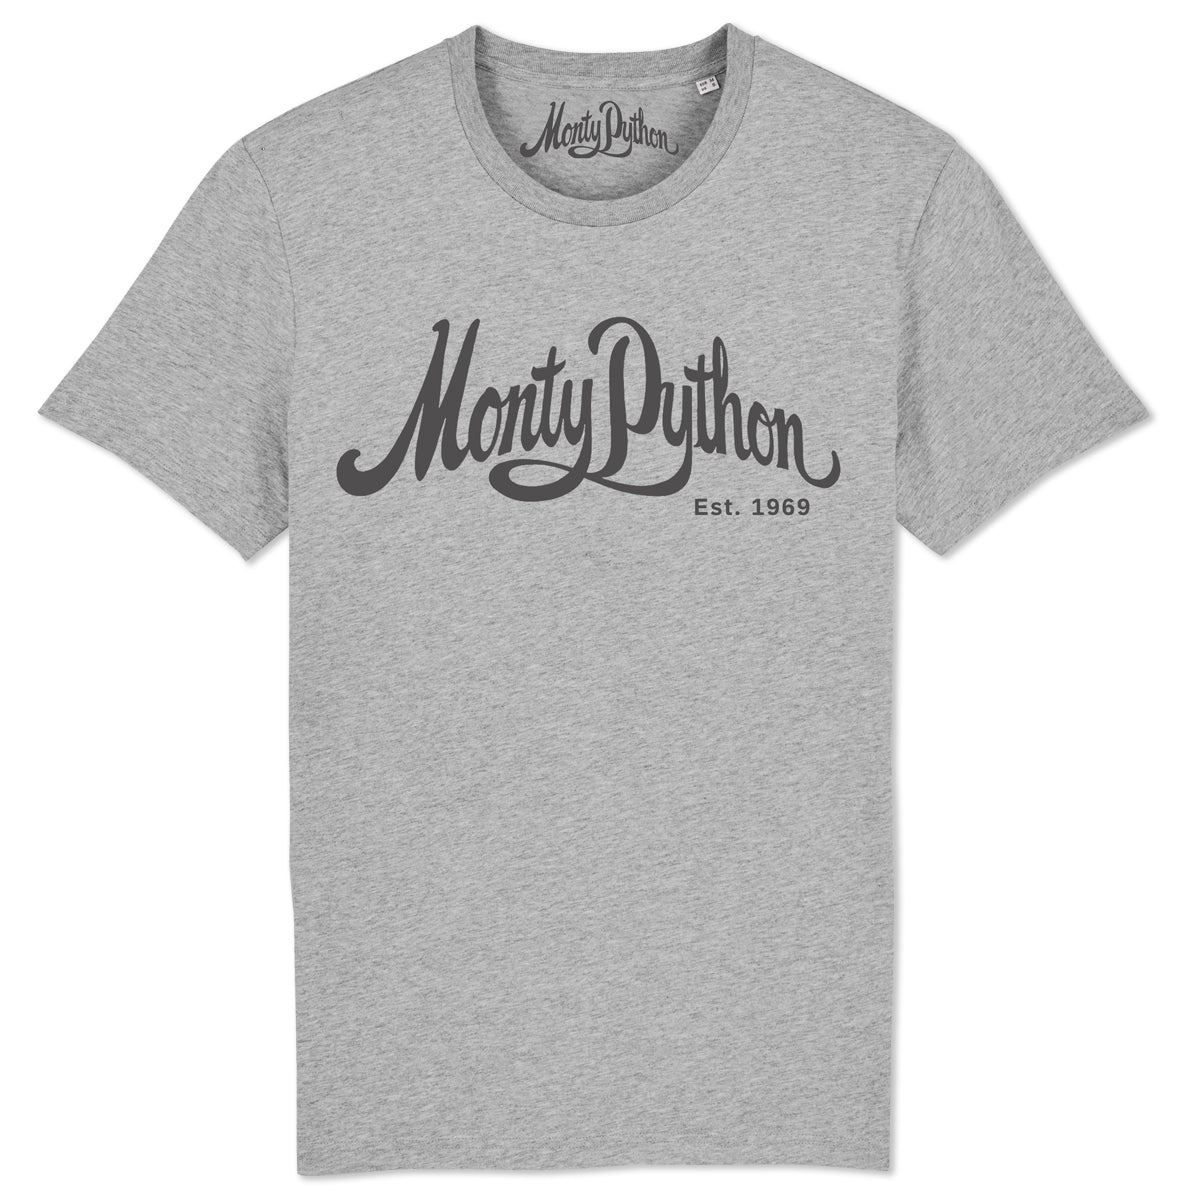 Monty Python - Monty Python 1969 Grey T-Shirt